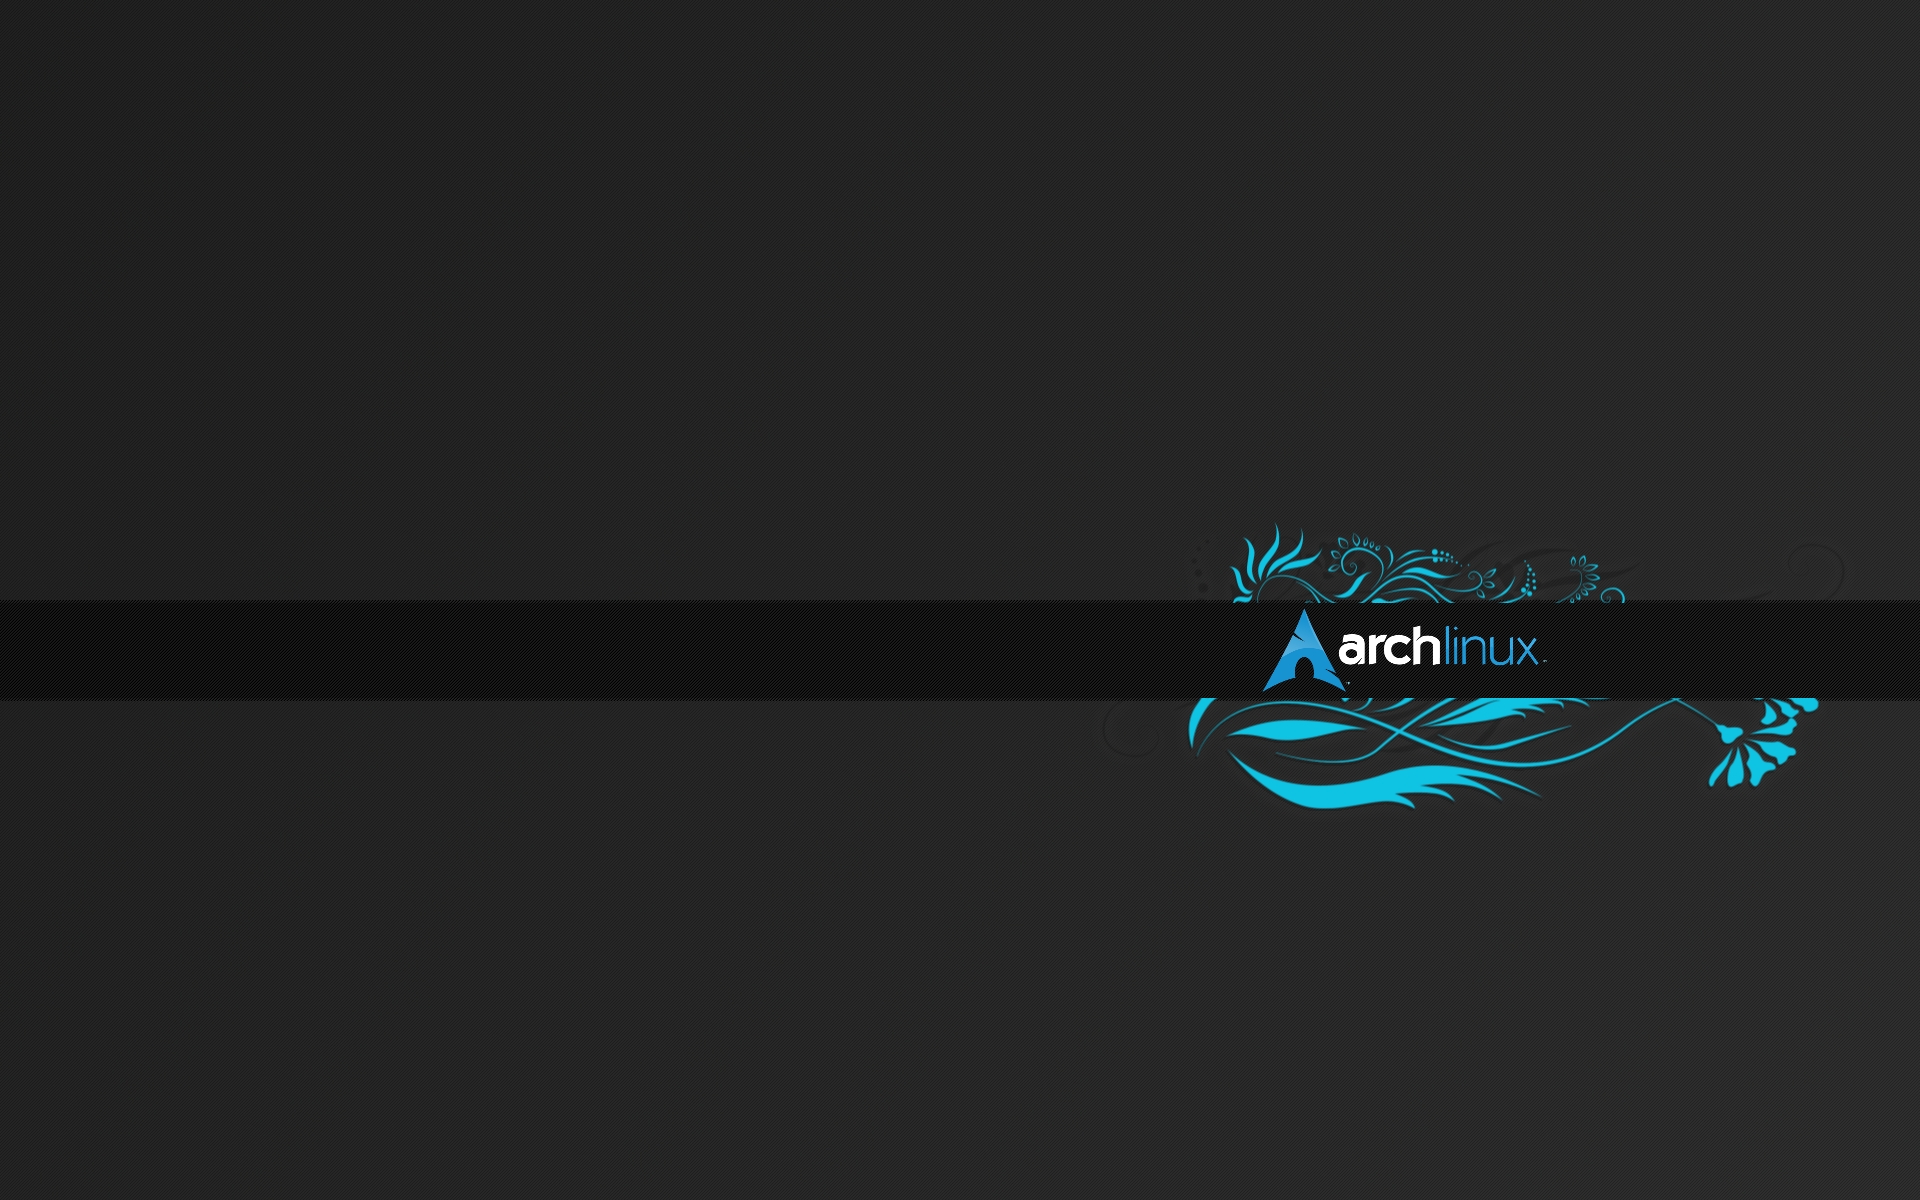 Với Arch Linux, bạn sẽ được trải nghiệm những tiện ích và công cụ tùy chỉnh độc đáo, giúp bạn dễ dàng điều chỉnh cho phù hợp với nhu cầu của mình. Hãy cùng khám phá những tính năng độc đáo của Arch Linux.